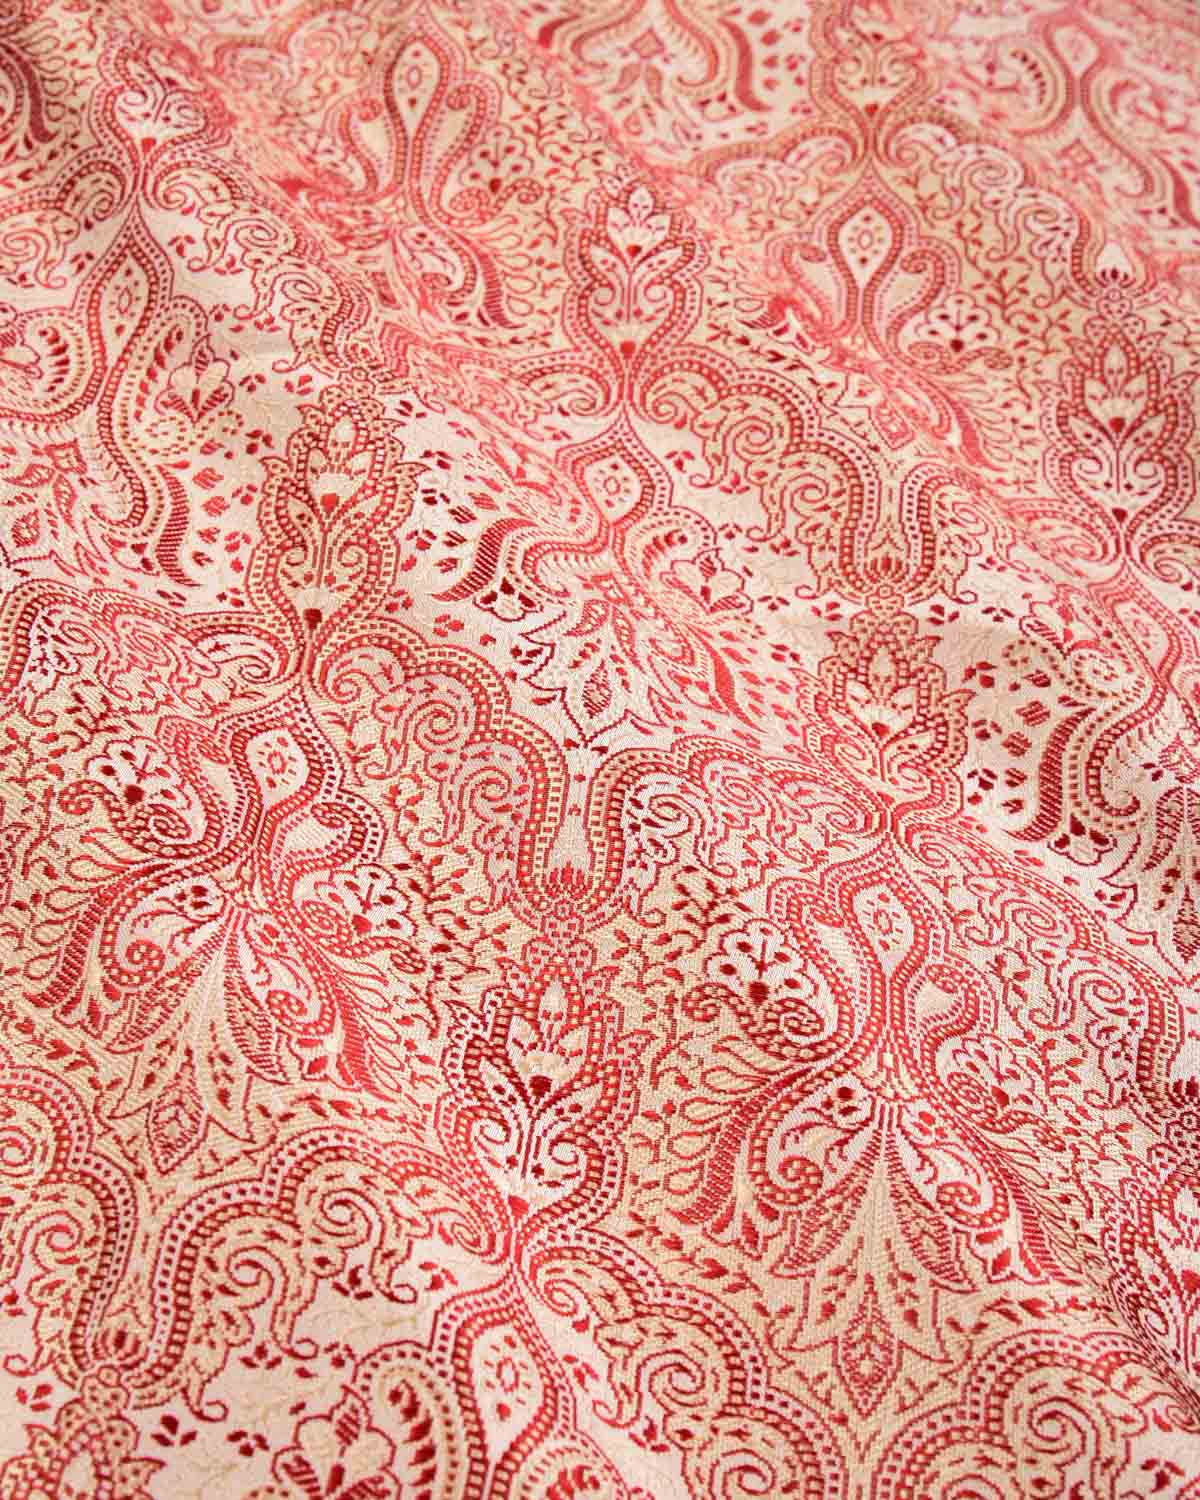 Red On White Banarasi Jamawar Handwoven Silk Scarf 38"x38" - By HolyWeaves, Benares